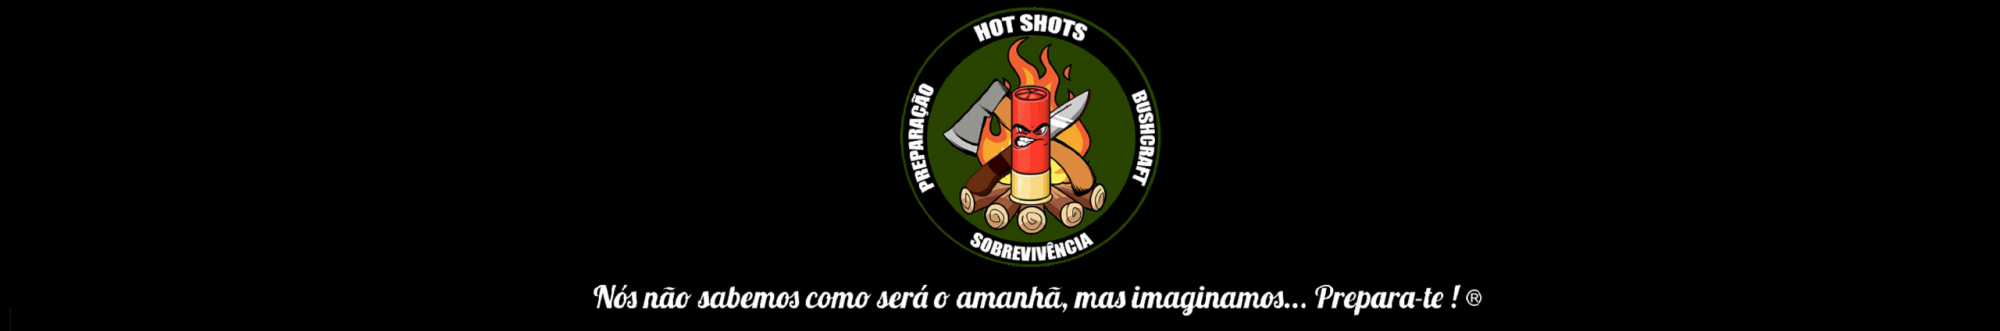 Hot Shots Sobrevivência Preparação e Bushcraft